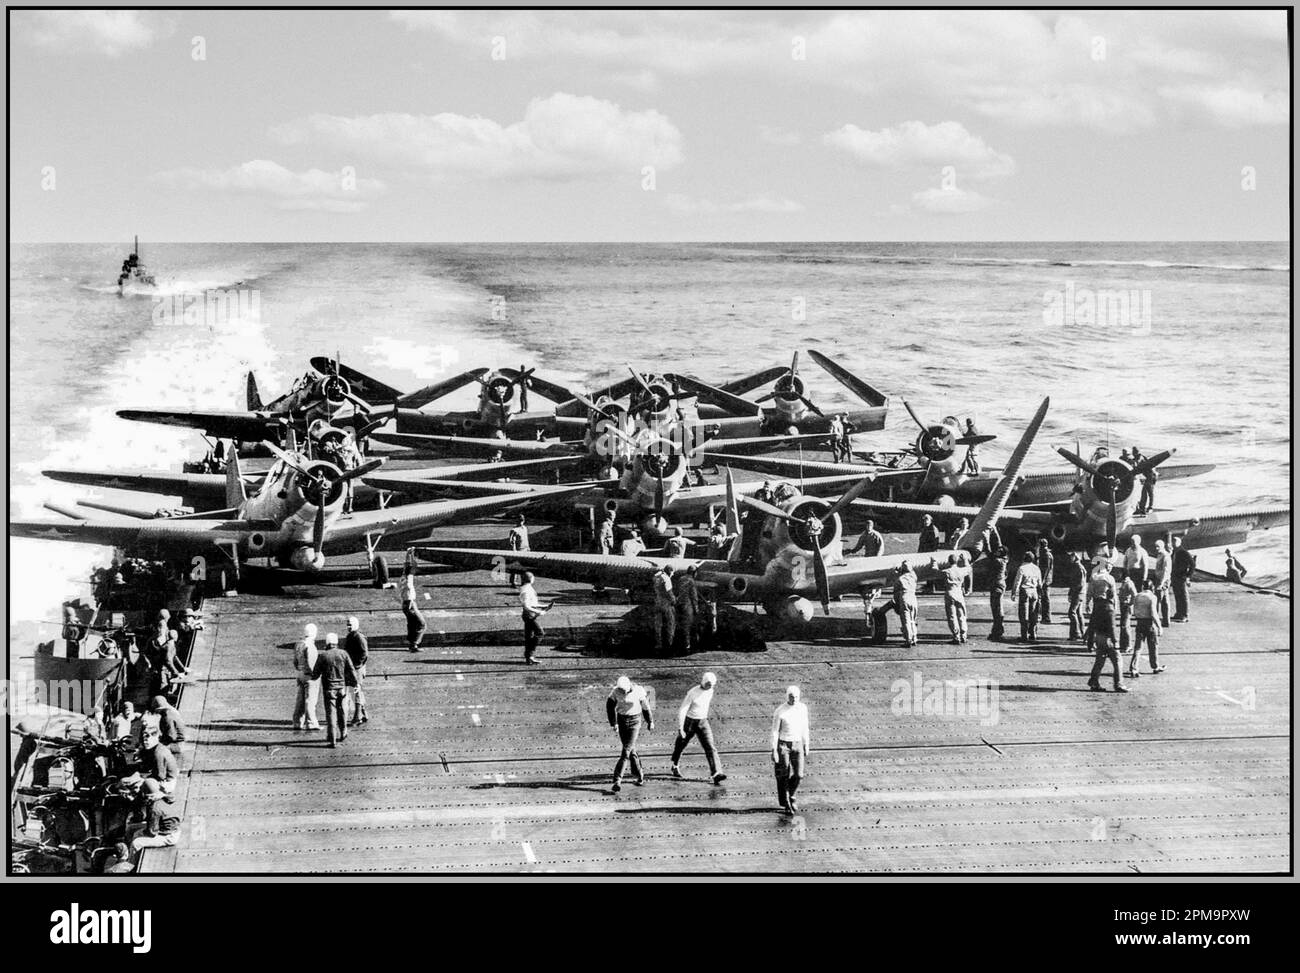 BATAILLE DE MIDWAY WW2 les bombardiers-torpilleurs Douglas-TBD-1 déploient leurs ailes pour le décollage du porte-avions USS Enterprise pendant la bataille de Midway, le 4 juin 1942 la bataille de Midway est une bataille navale majeure sur le théâtre Pacifique de la seconde Guerre mondiale qui a eu lieu du 4 au 7 juin 1942, Banque D'Images